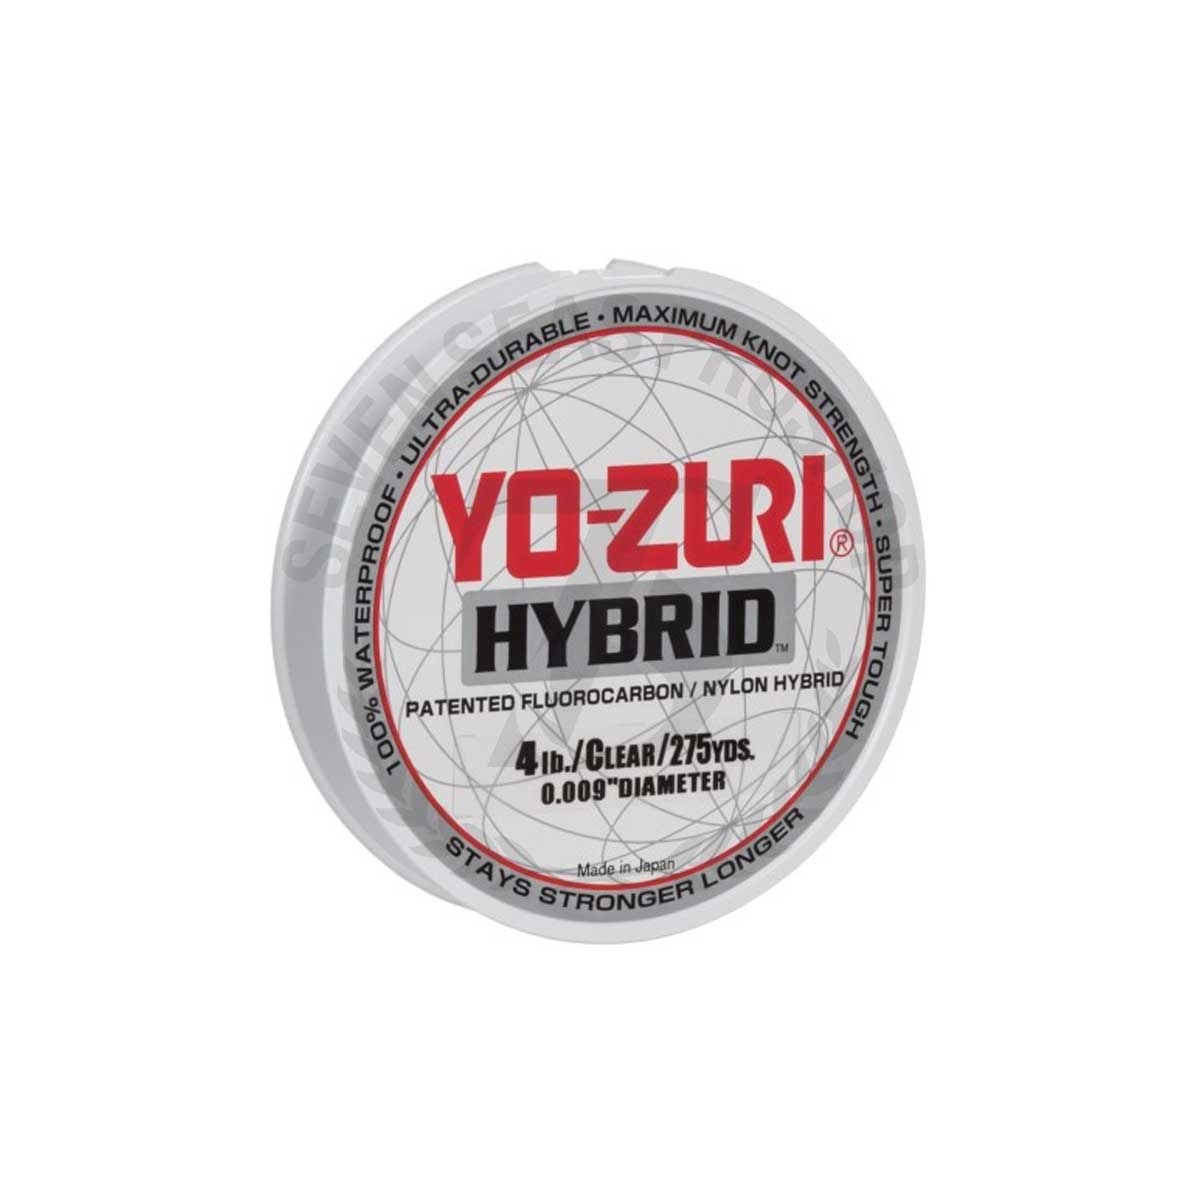 Yo-Zuri Hybrid 275Yd Clear #4lb*สายลีดฟลูออโรคาร์บอน - 7 SEAS PROSHOP  (THAILAND)